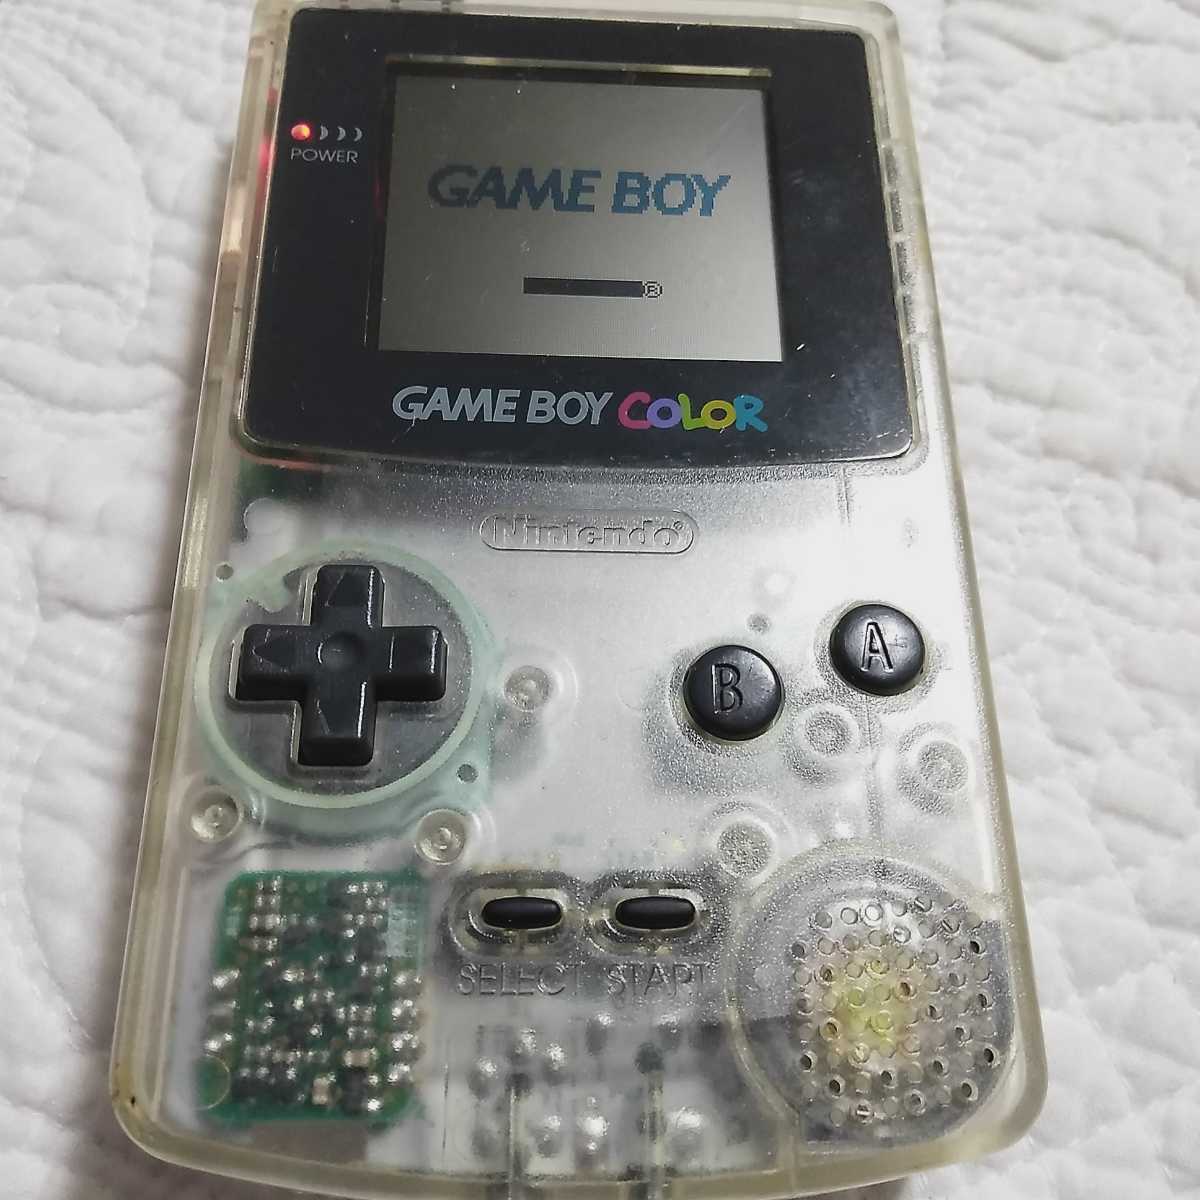  бесплатная доставка 0Nintendo nintendo Game Boy цвет прозрачный корпус 0 батарейка крышка покрытие нет 0 Cardcaptor Sakura soft есть 